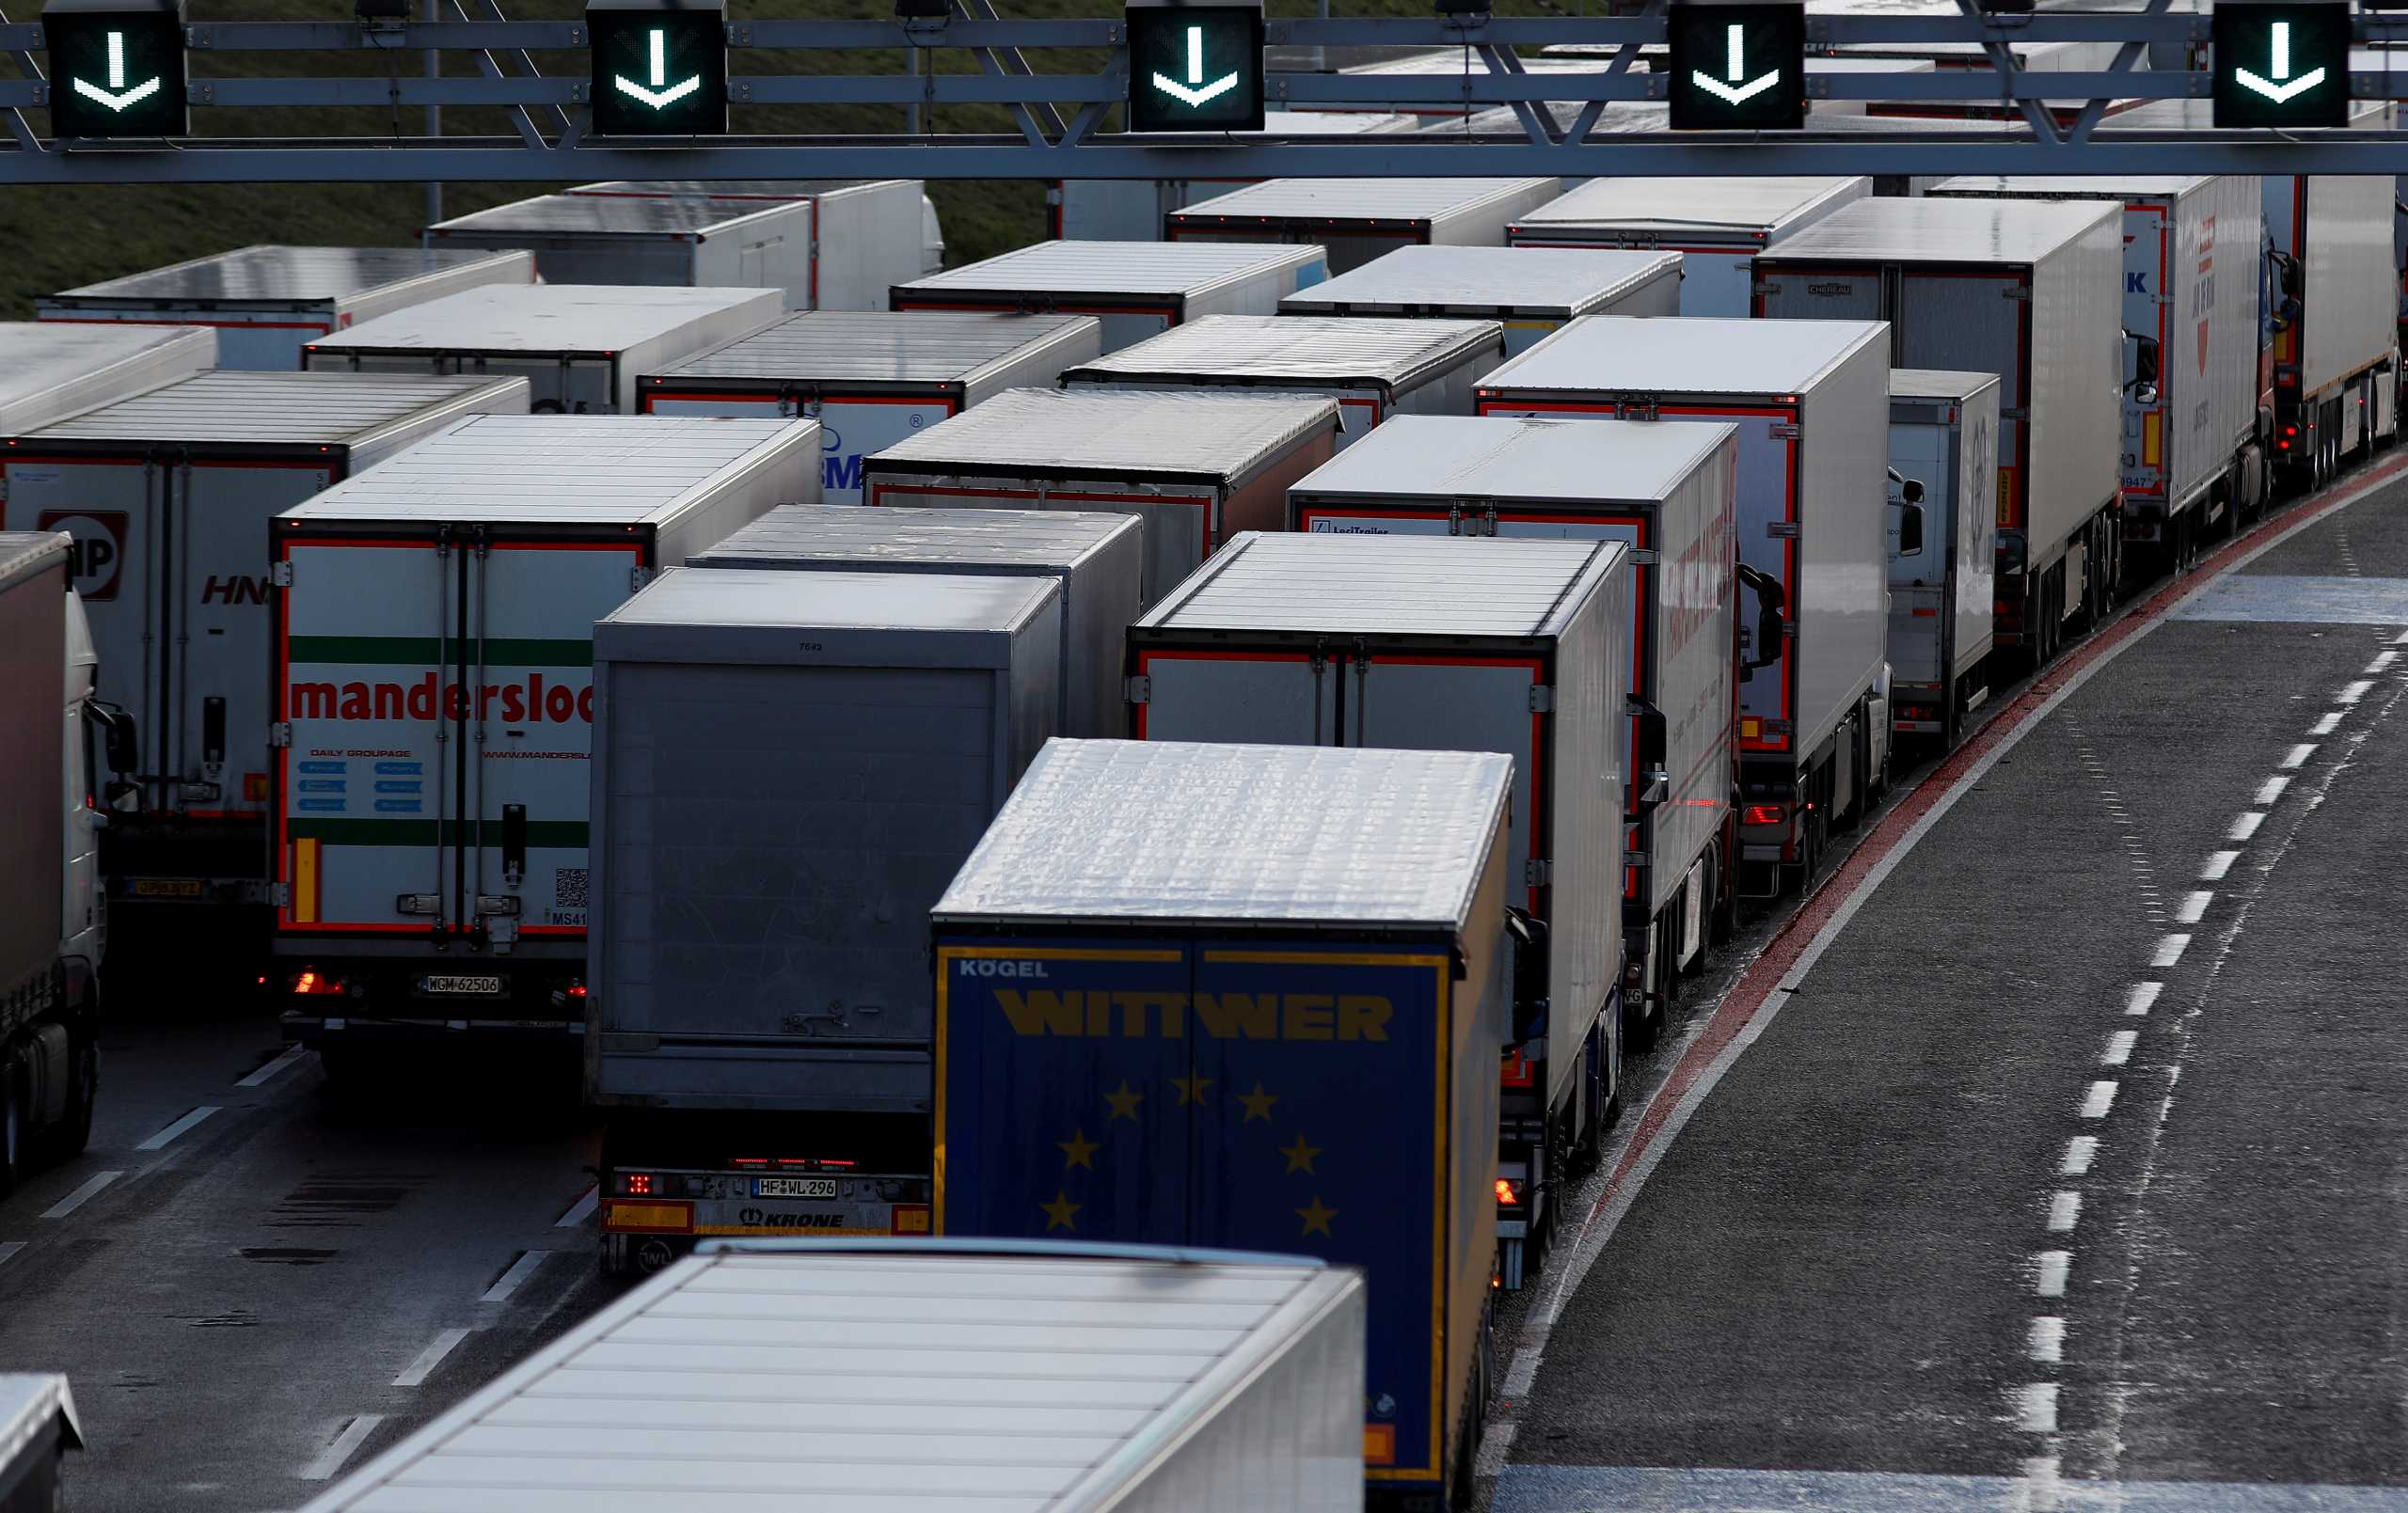 Βρετανία: «Έμφραγμα» στα σύνορα! Ουρές χιλιομέτρων από ακινητοποιημένα φορτηγά, χάος για οικογένειες (pics)